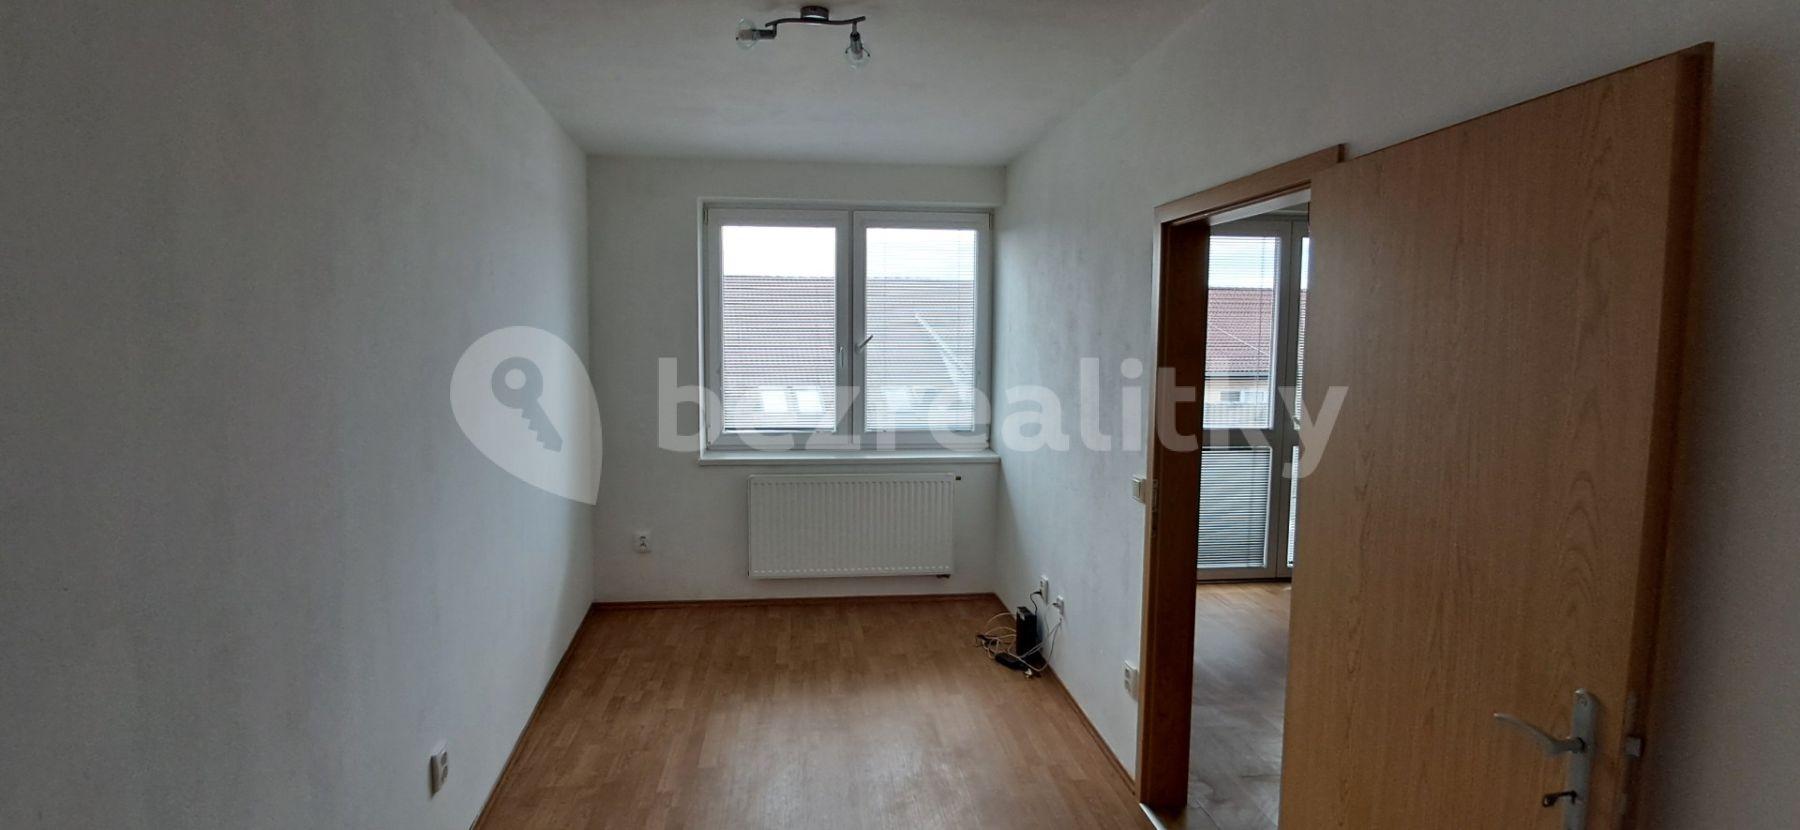 1 bedroom with open-plan kitchen flat for sale, 42 m², Komenského, Židlochovice, Jihomoravský Region